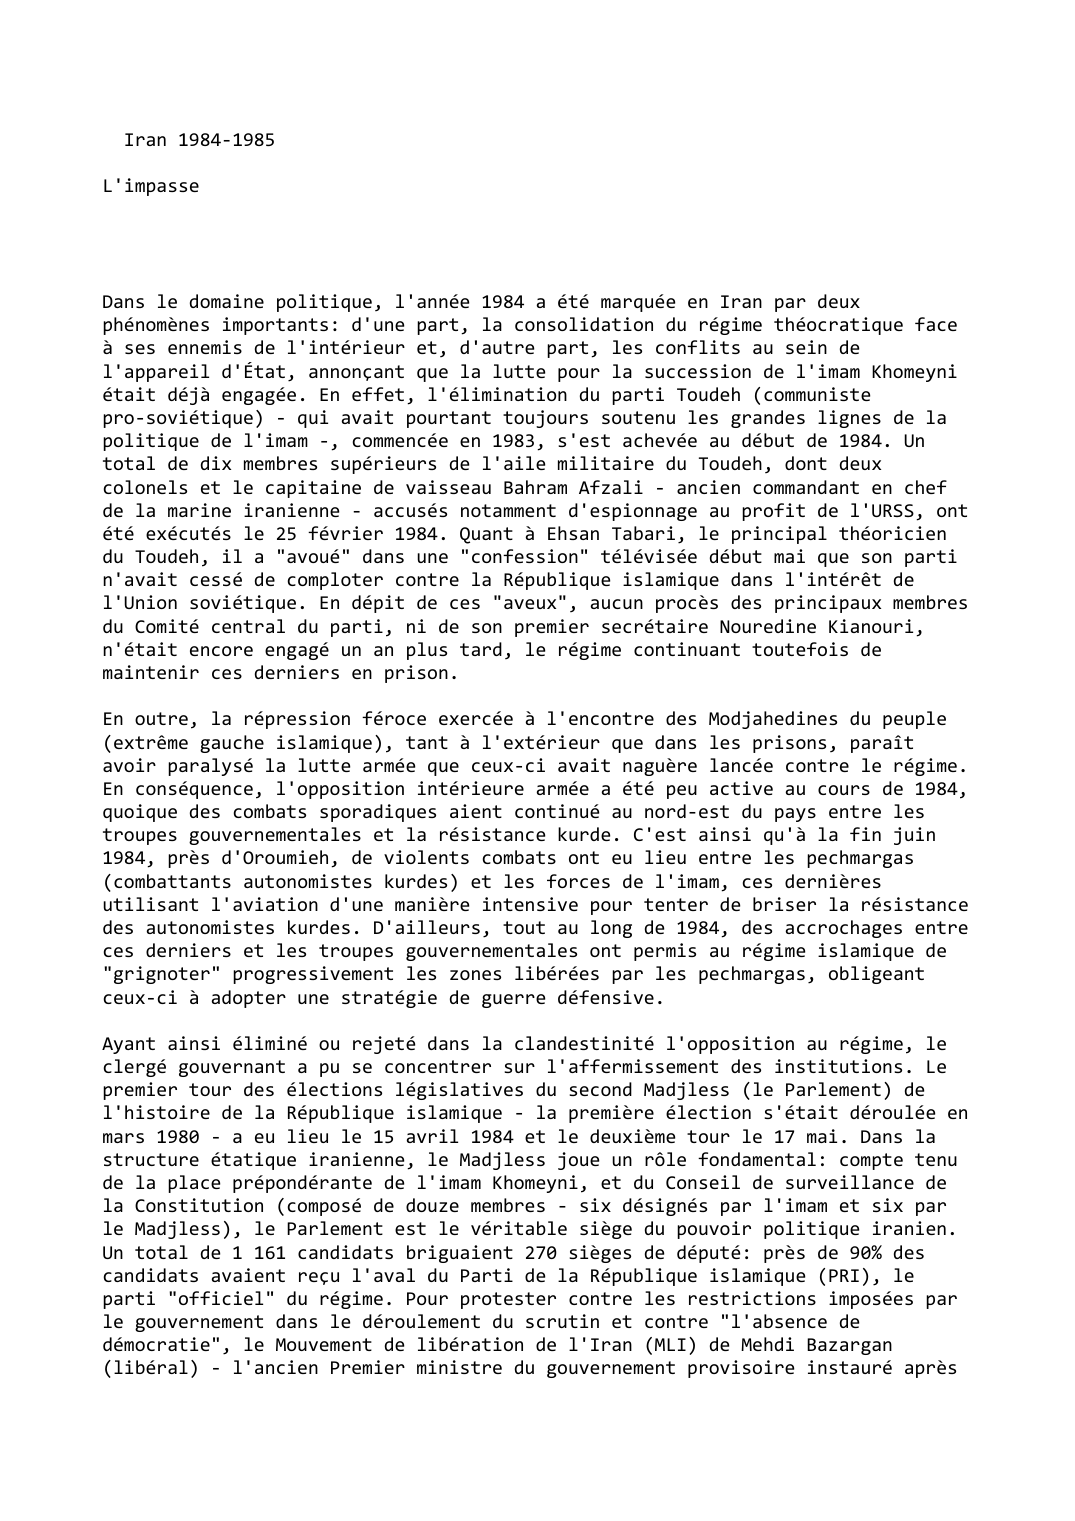 Prévisualisation du document Iran (1984-1985)

L'impasse